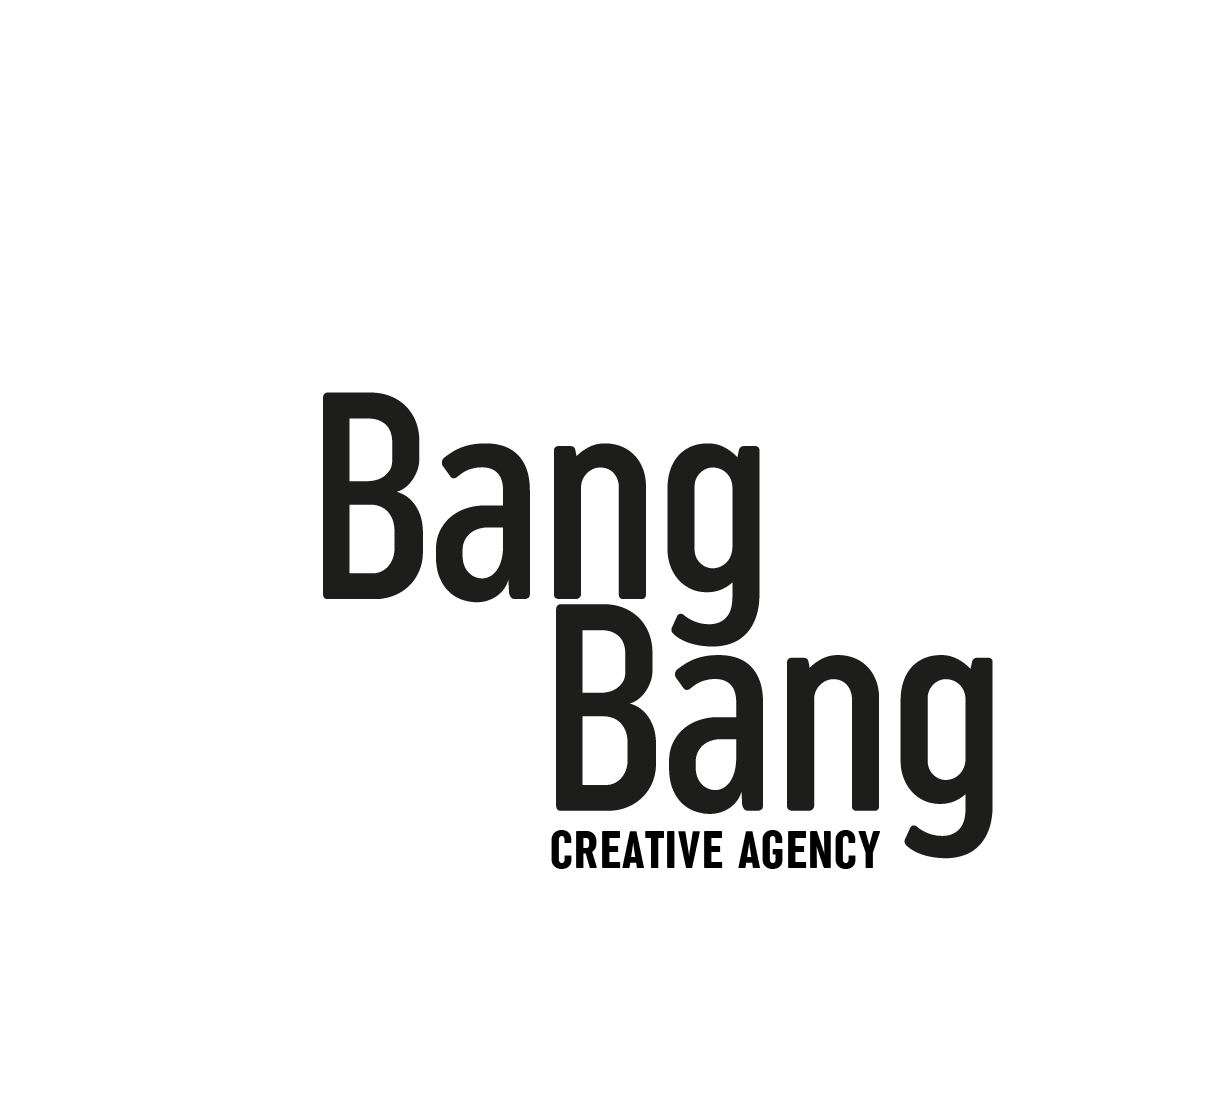 Sr. Bang Bang